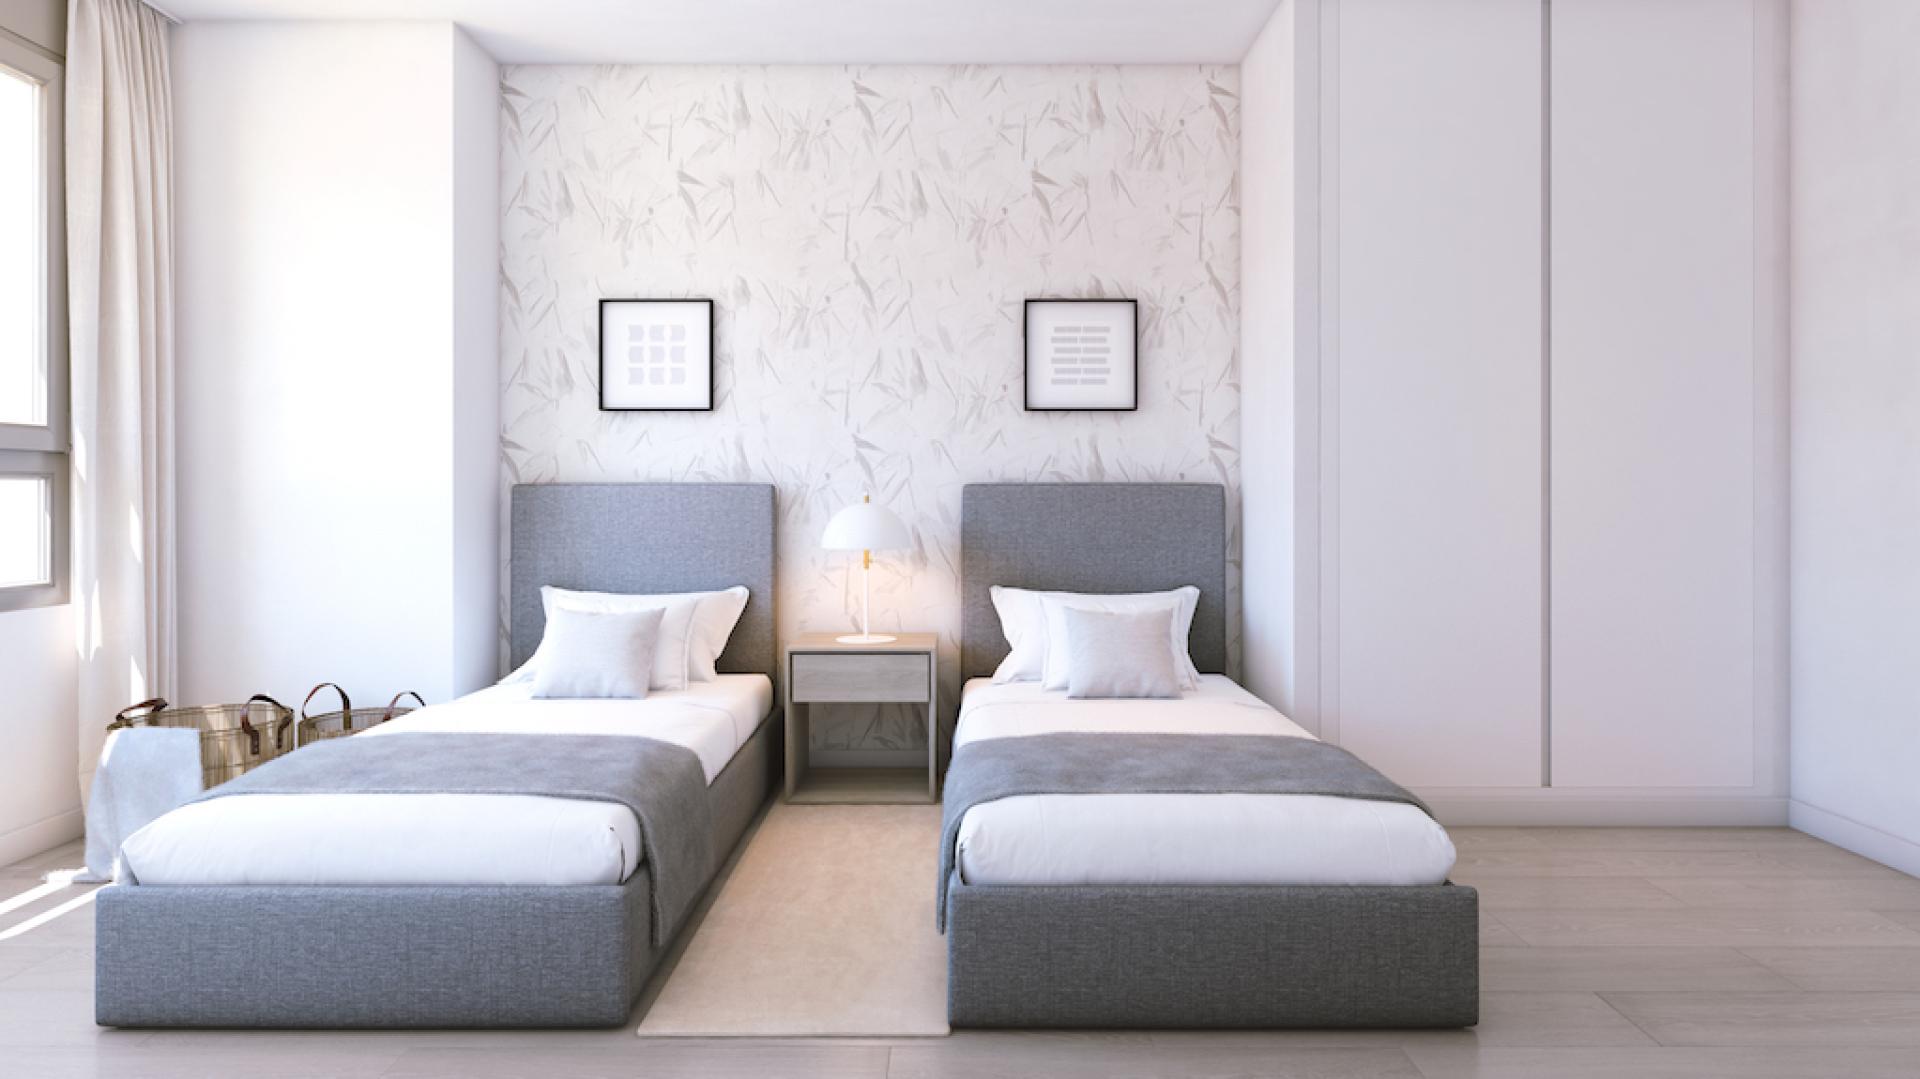 4 slaapkamer Appartement met terras in Alicante - Nieuwbouw in Medvilla Spanje